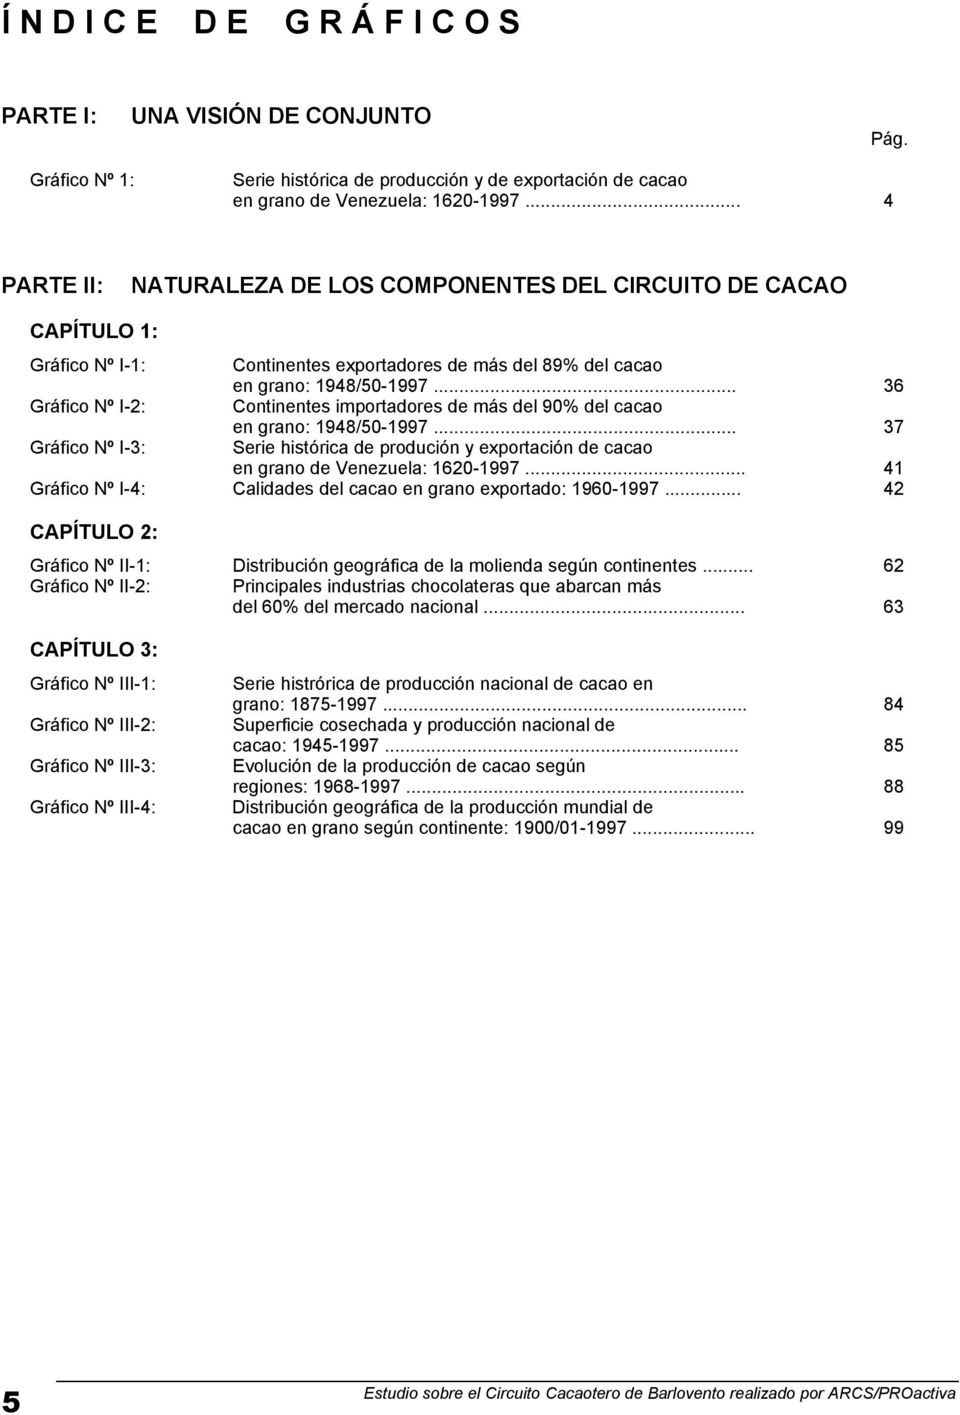 .. 36 Gráfico Nº I-2: Continentes importadores de más del 90% del cacao en grano: 948/50-997... 37 Gráfico Nº I-3: Serie histórica de produción y exportación de cacao en grano de Venezuela: 620-997.